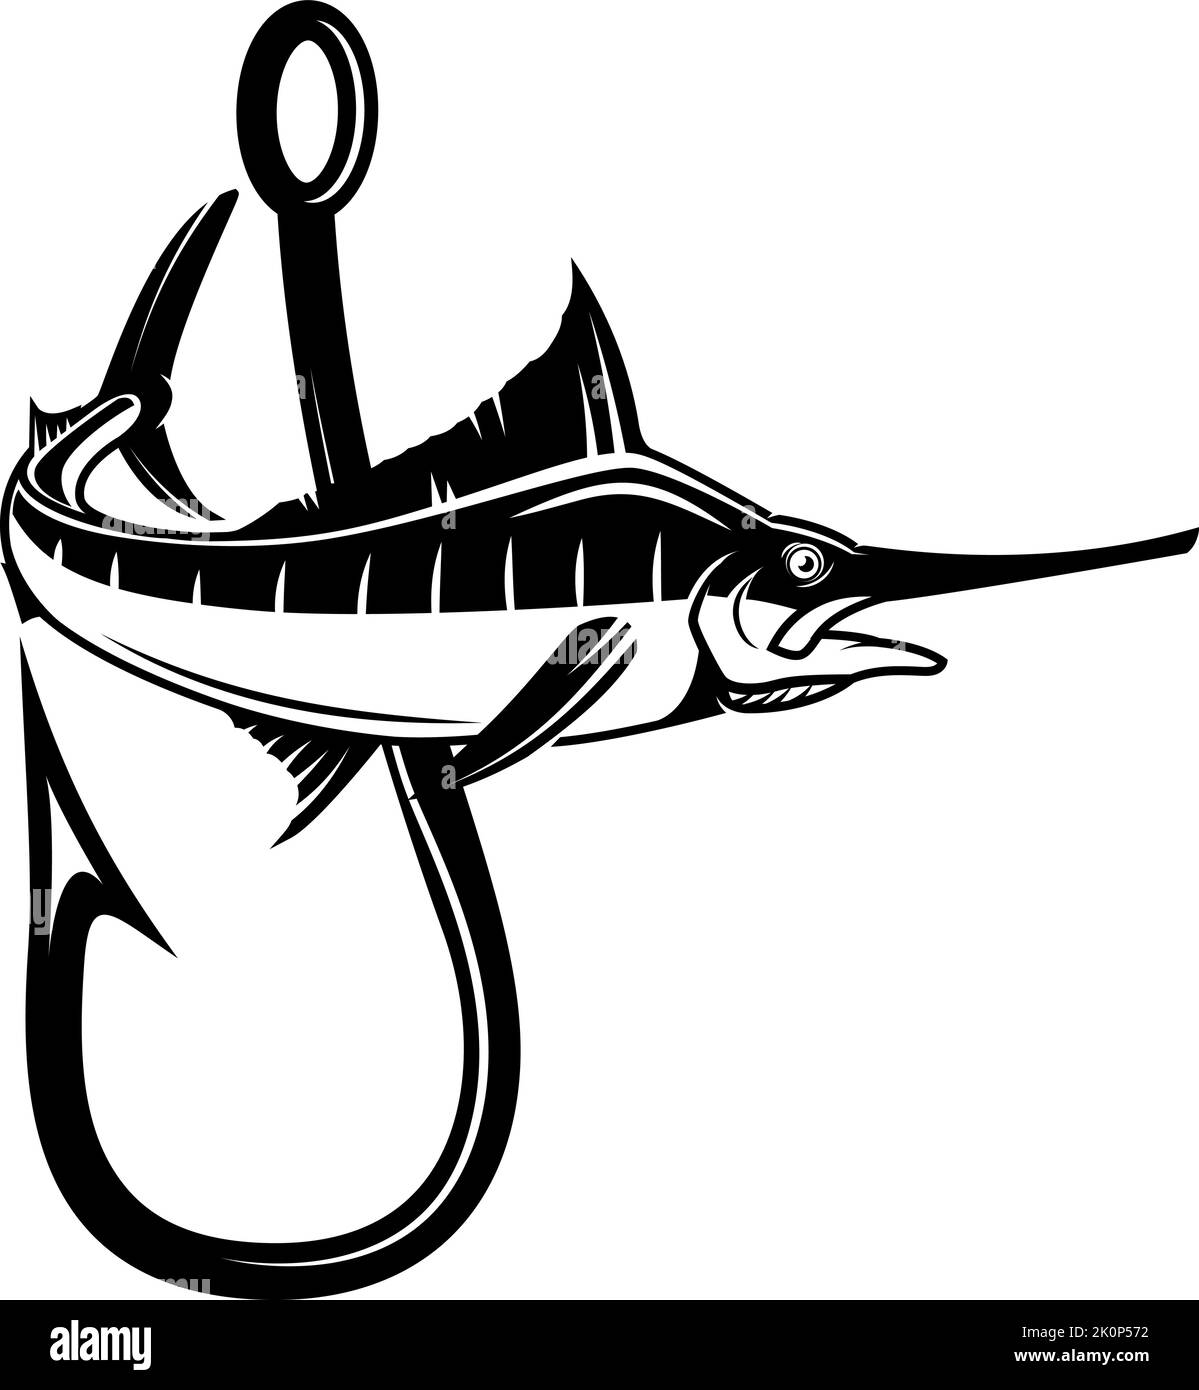 Swordfish and fishing hook. Design element for emblem, sign, badge, logo. Vector illustration Stock Vector